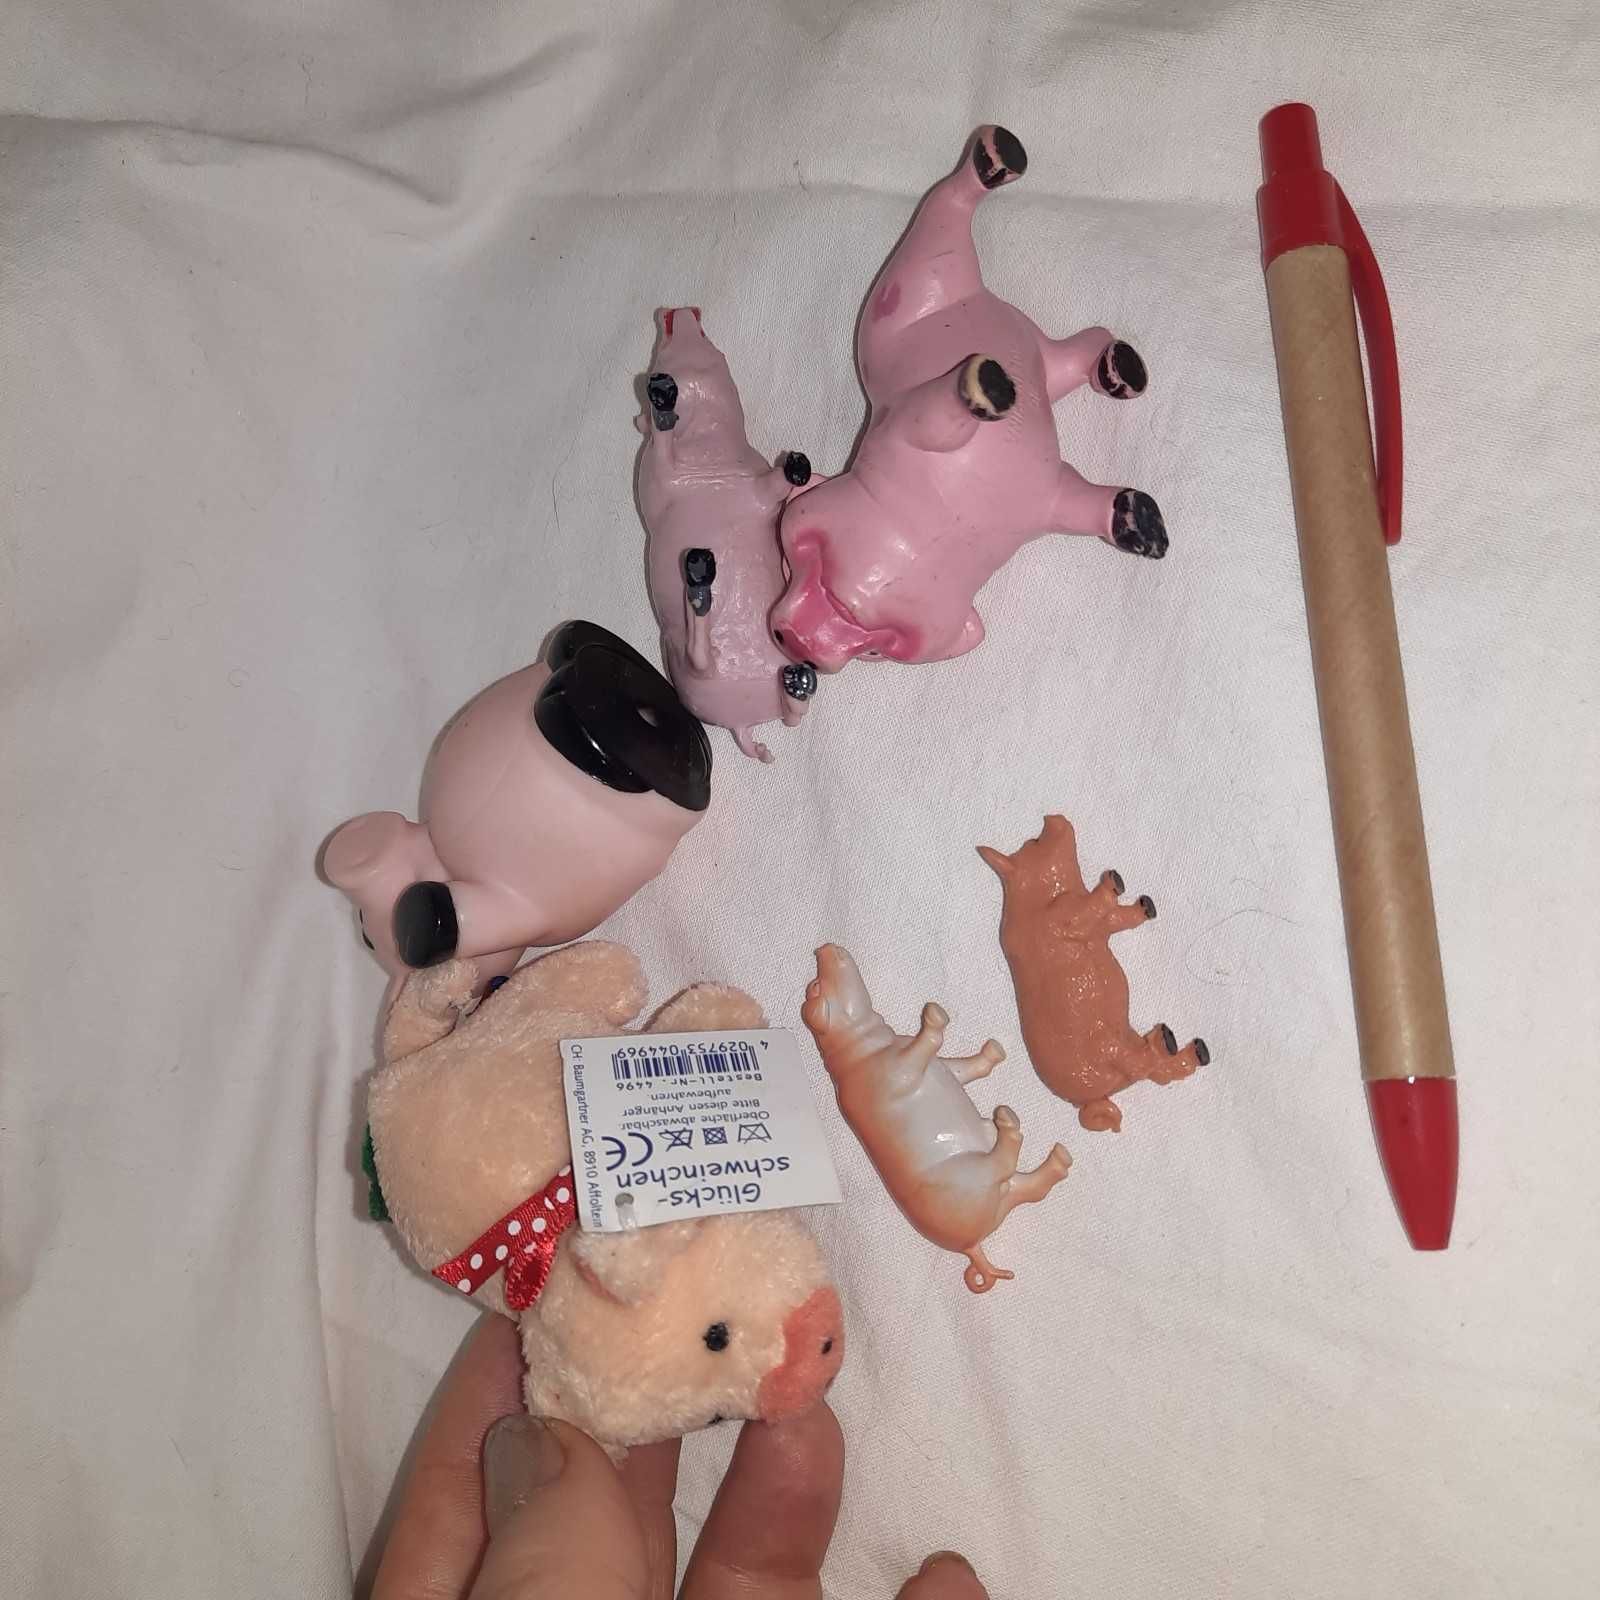 игрушка поросенок свинья свинка разные фигурки мягкая набор из 6штук